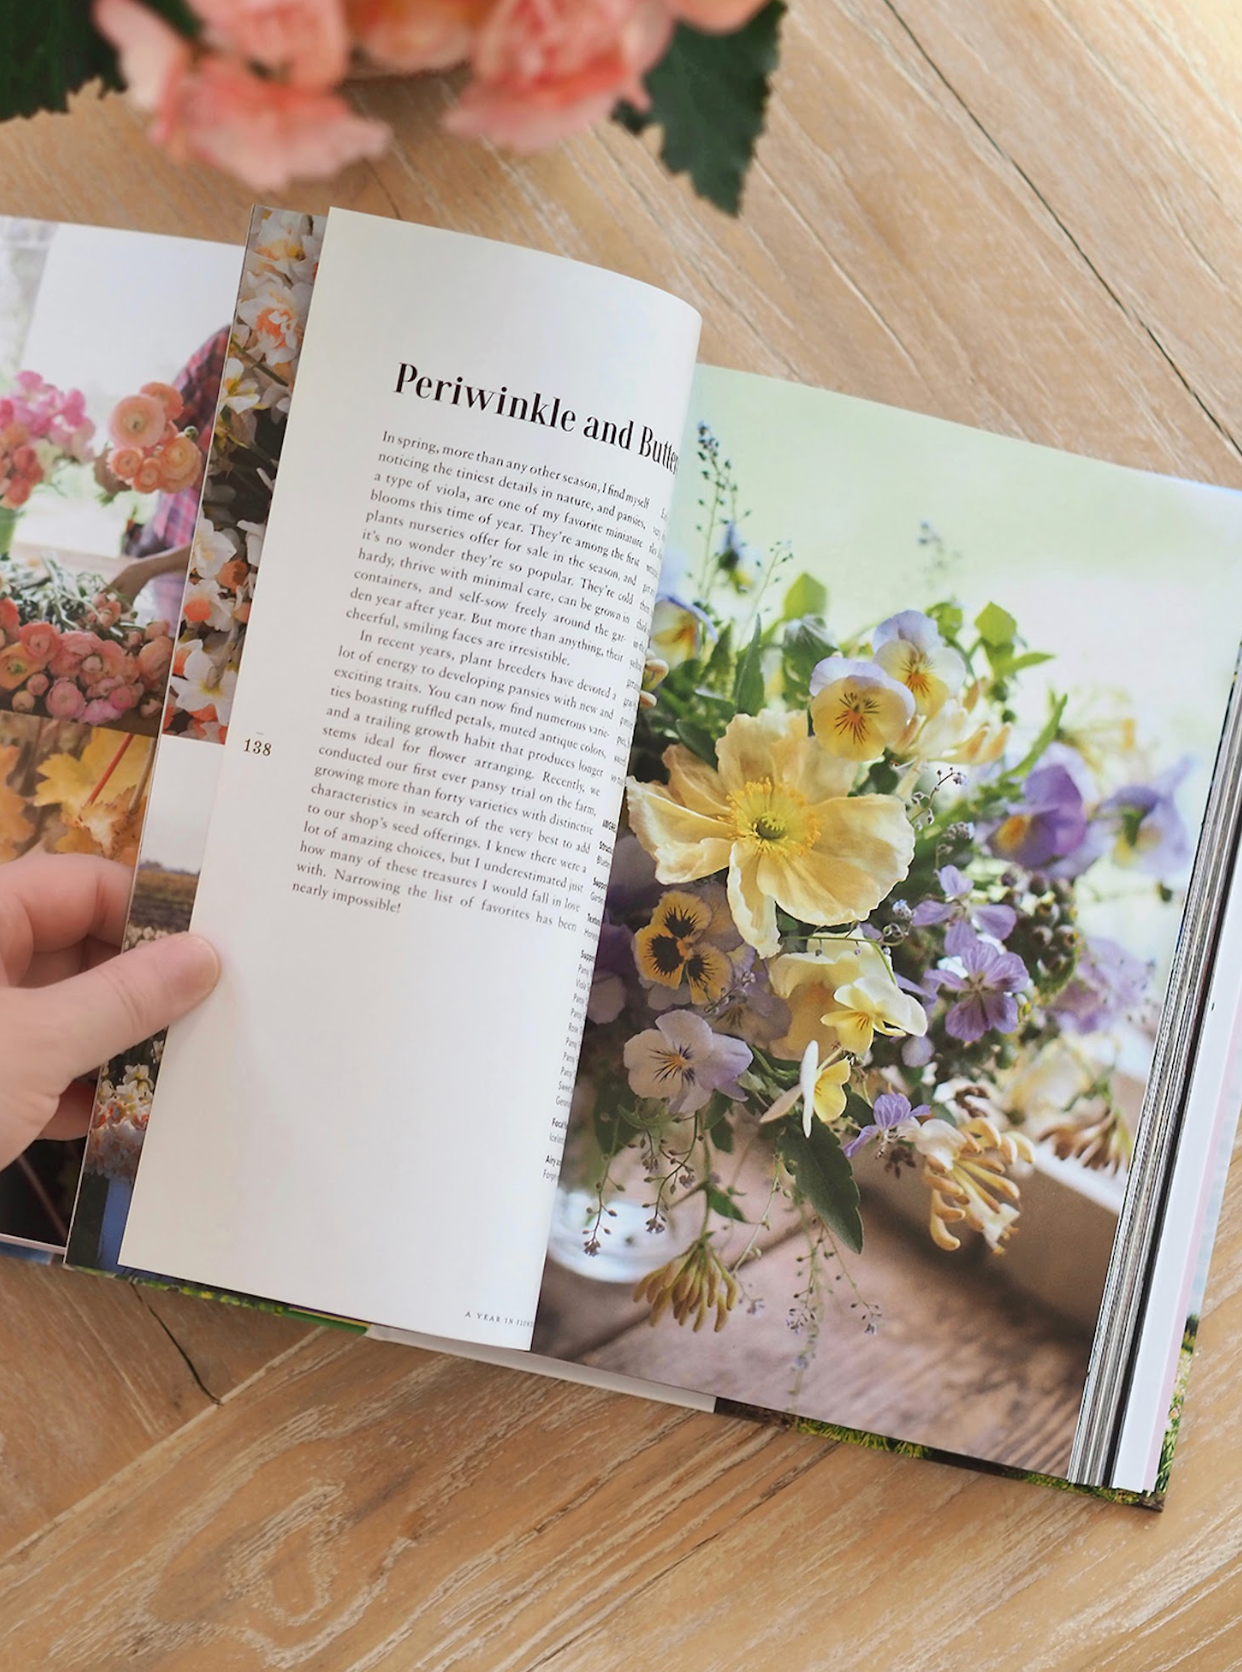 Floret Farm's Cut Flower Garden Book